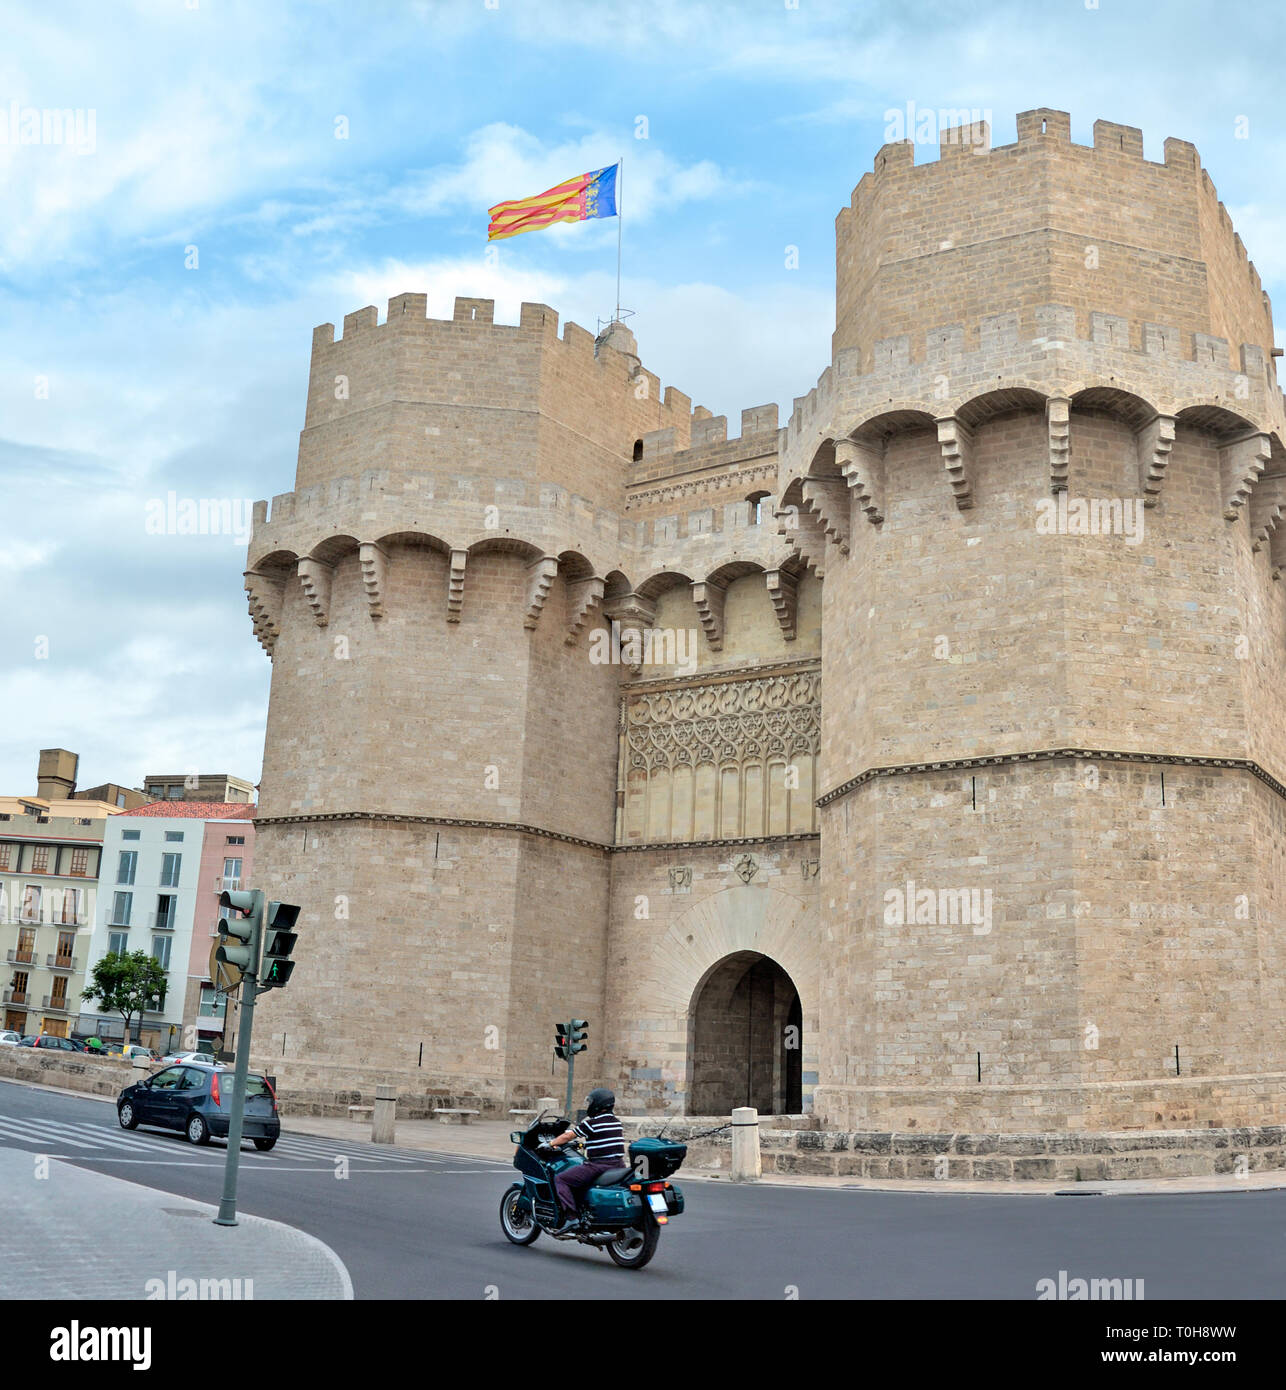 Torres de Serranos antigua puerta medieval en Valencia, España. Foto de stock